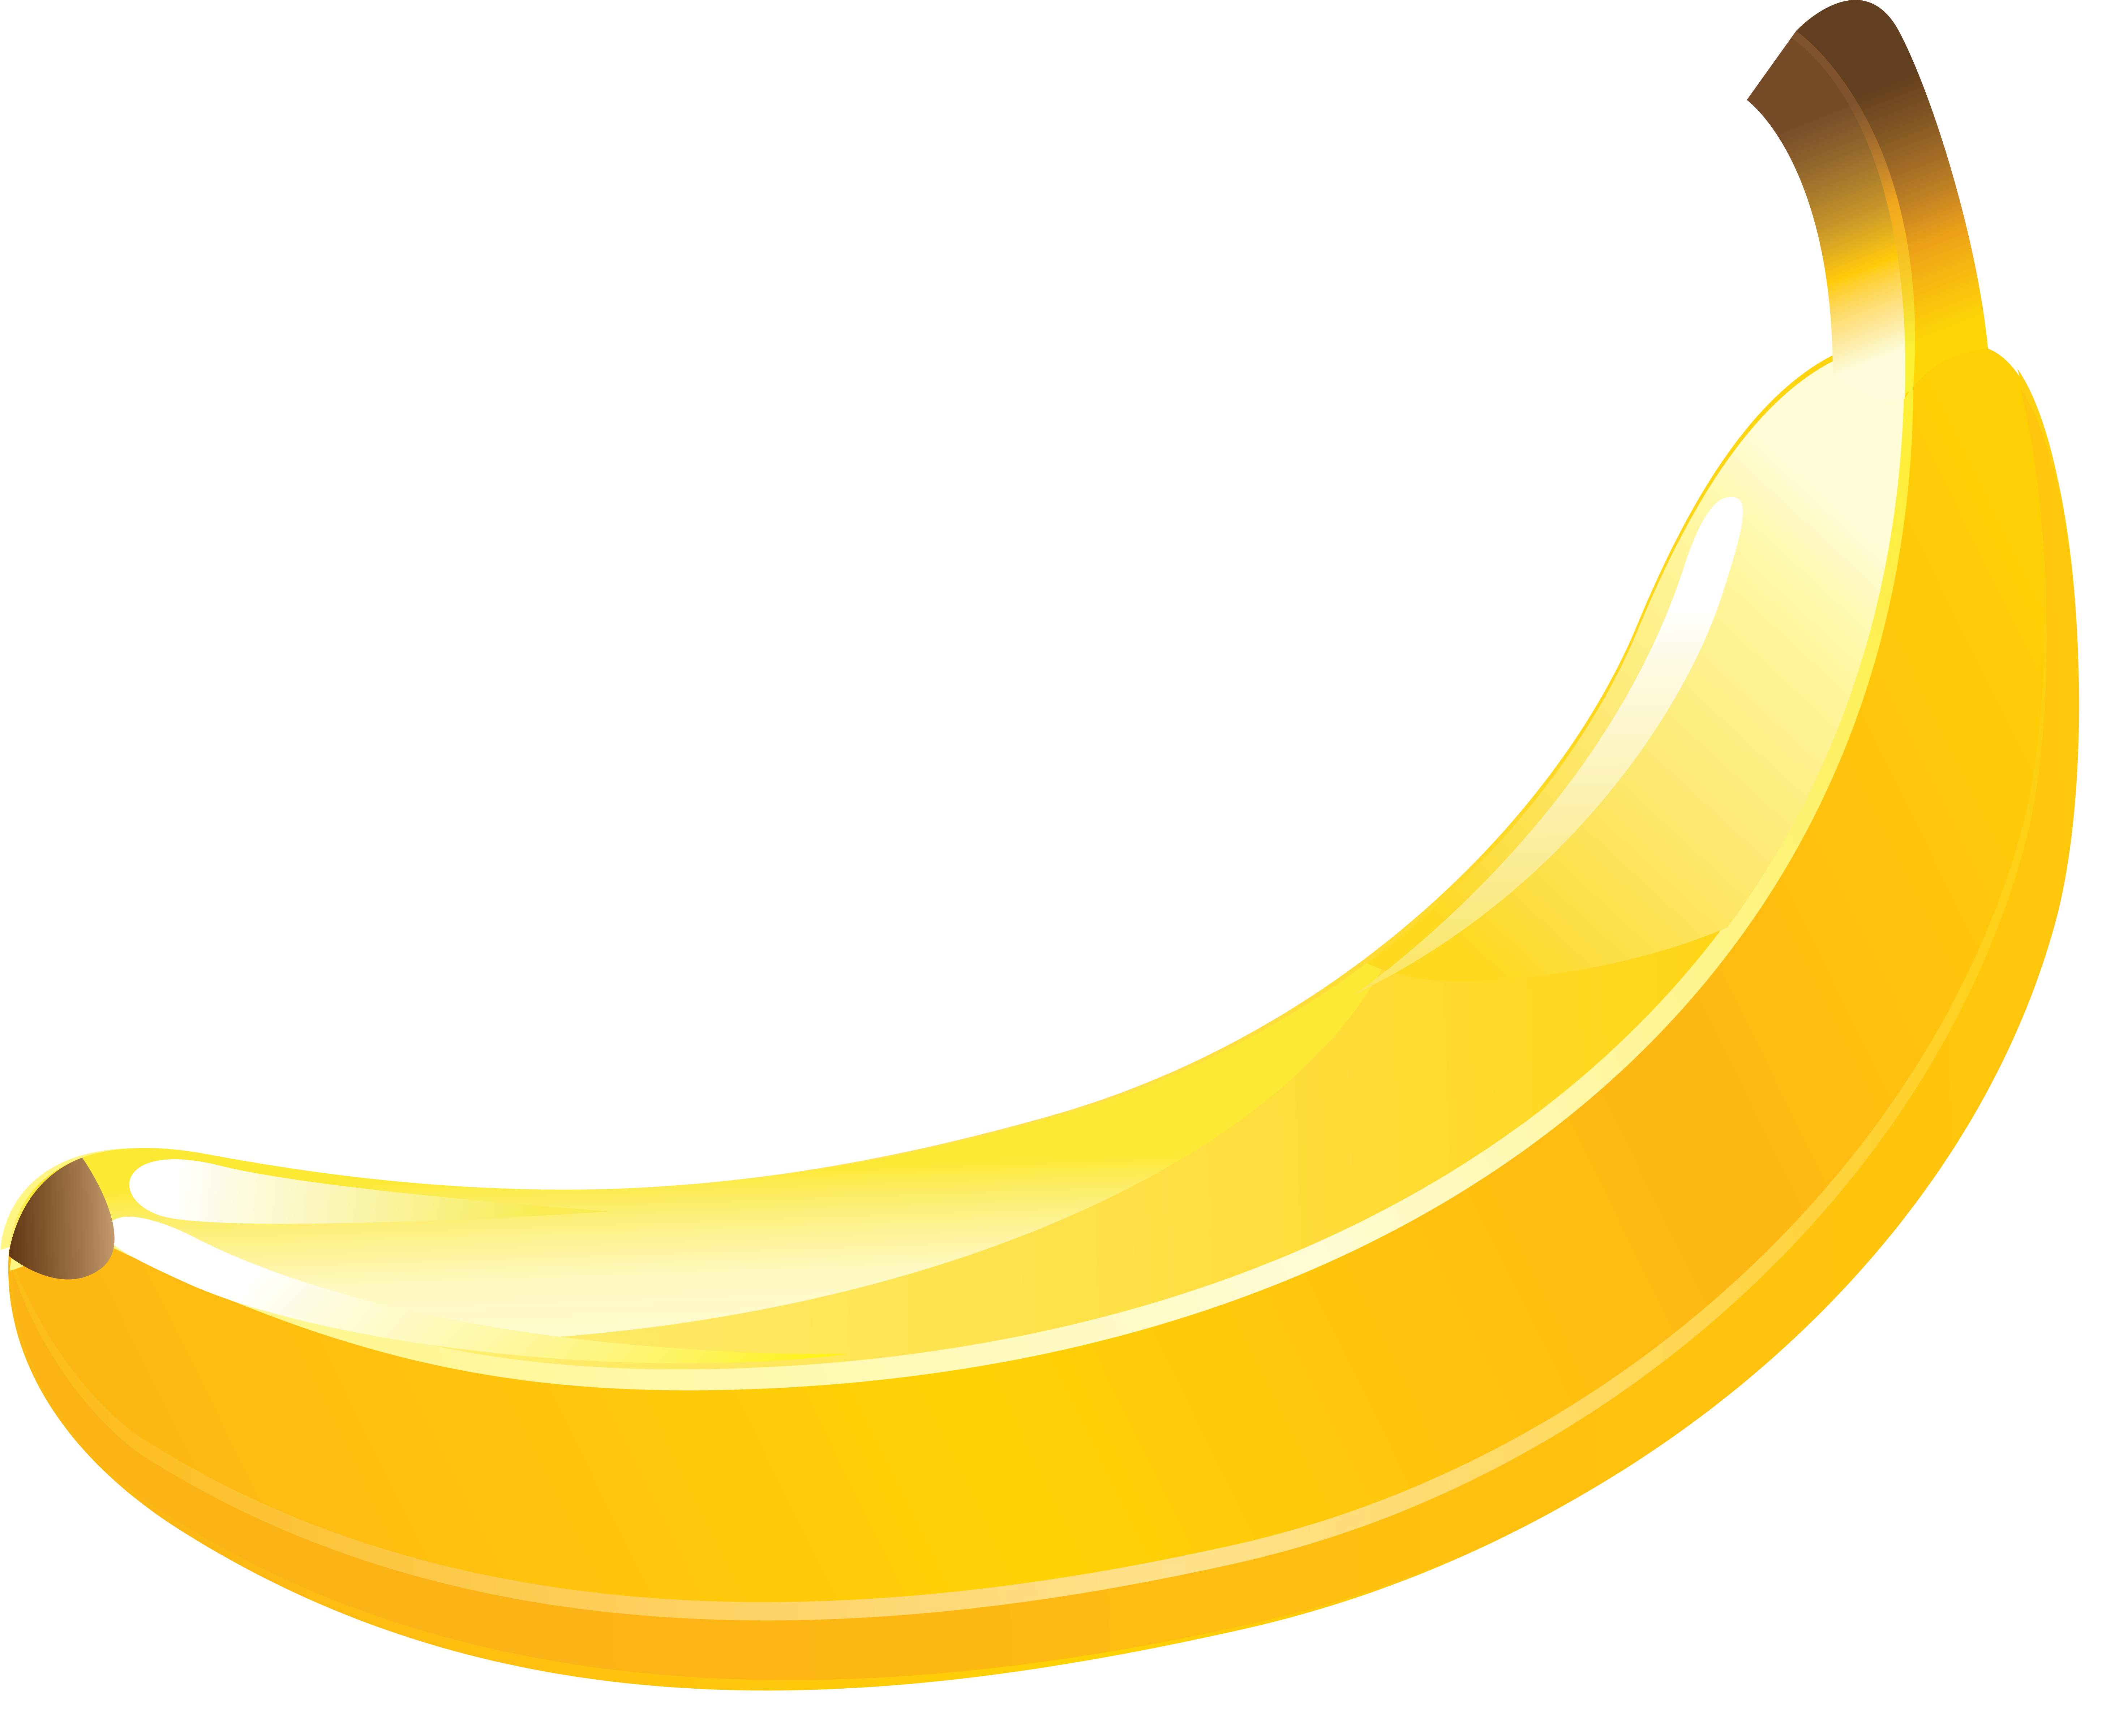 Banana image PNG transparent